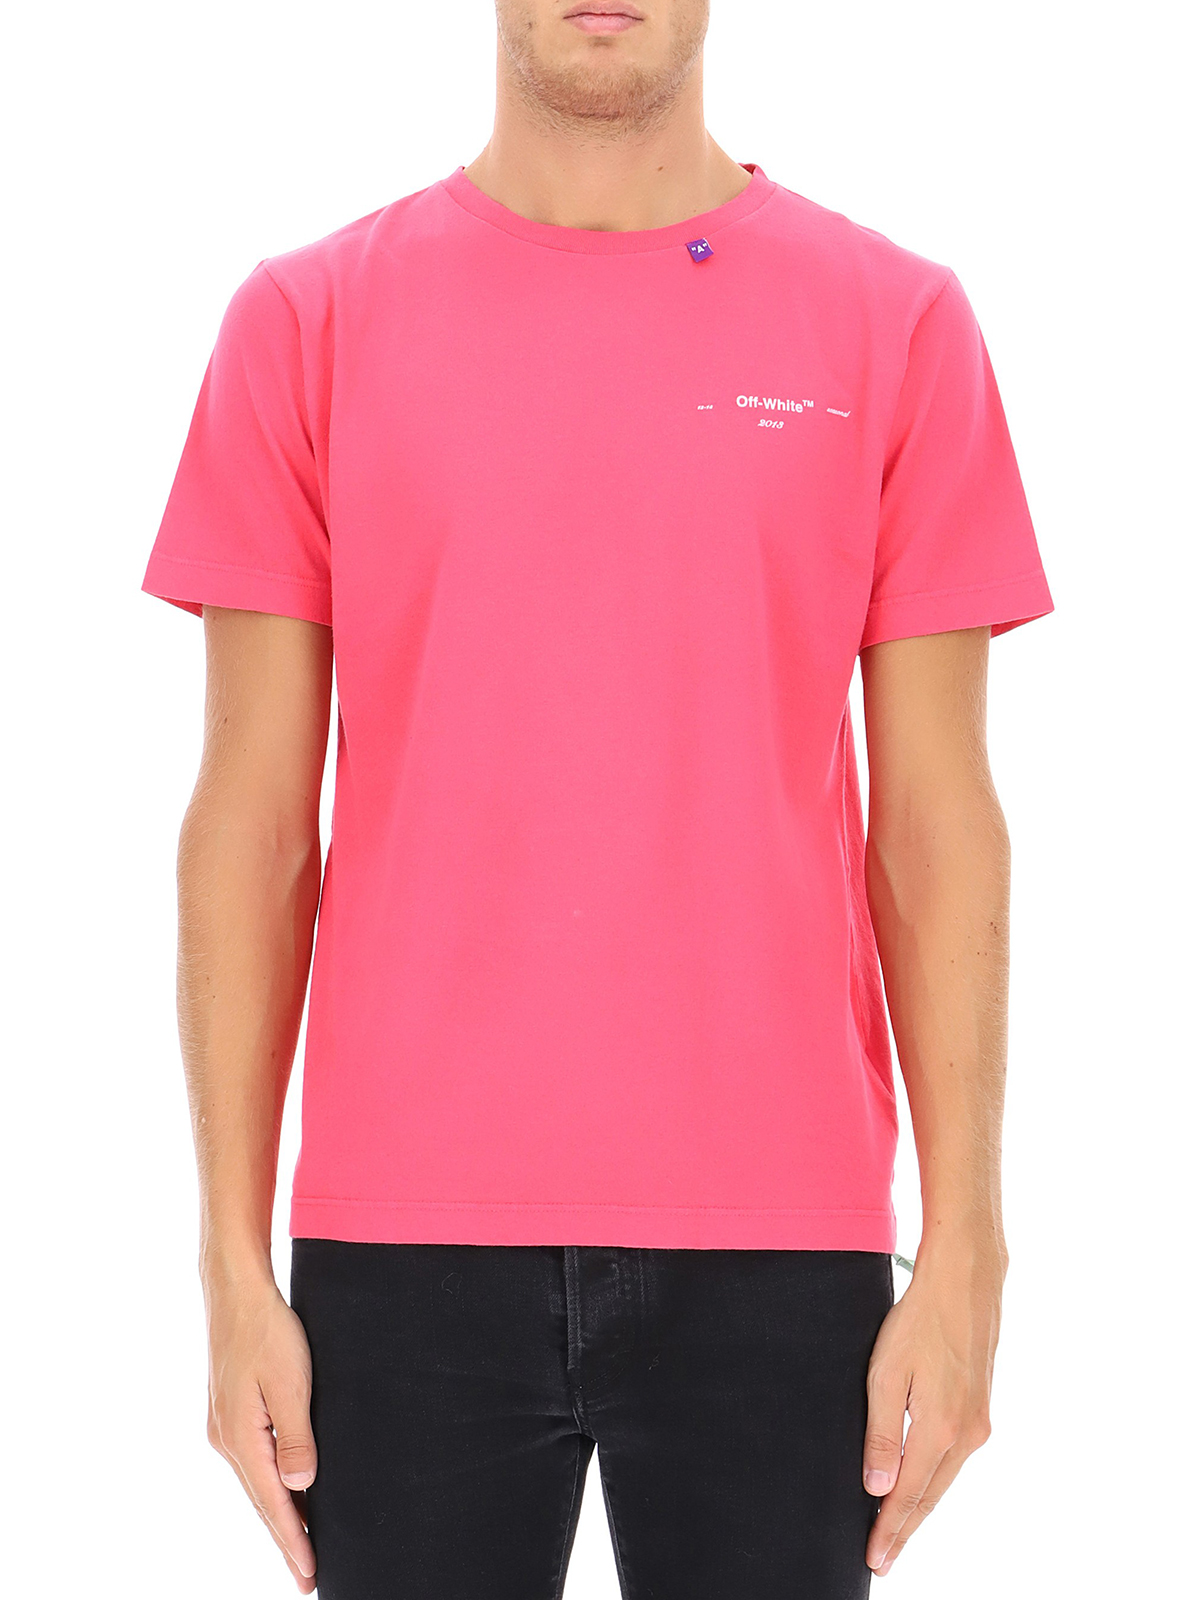 T-shirts - Logo print pink T-shirt - OMAA055F181850042800